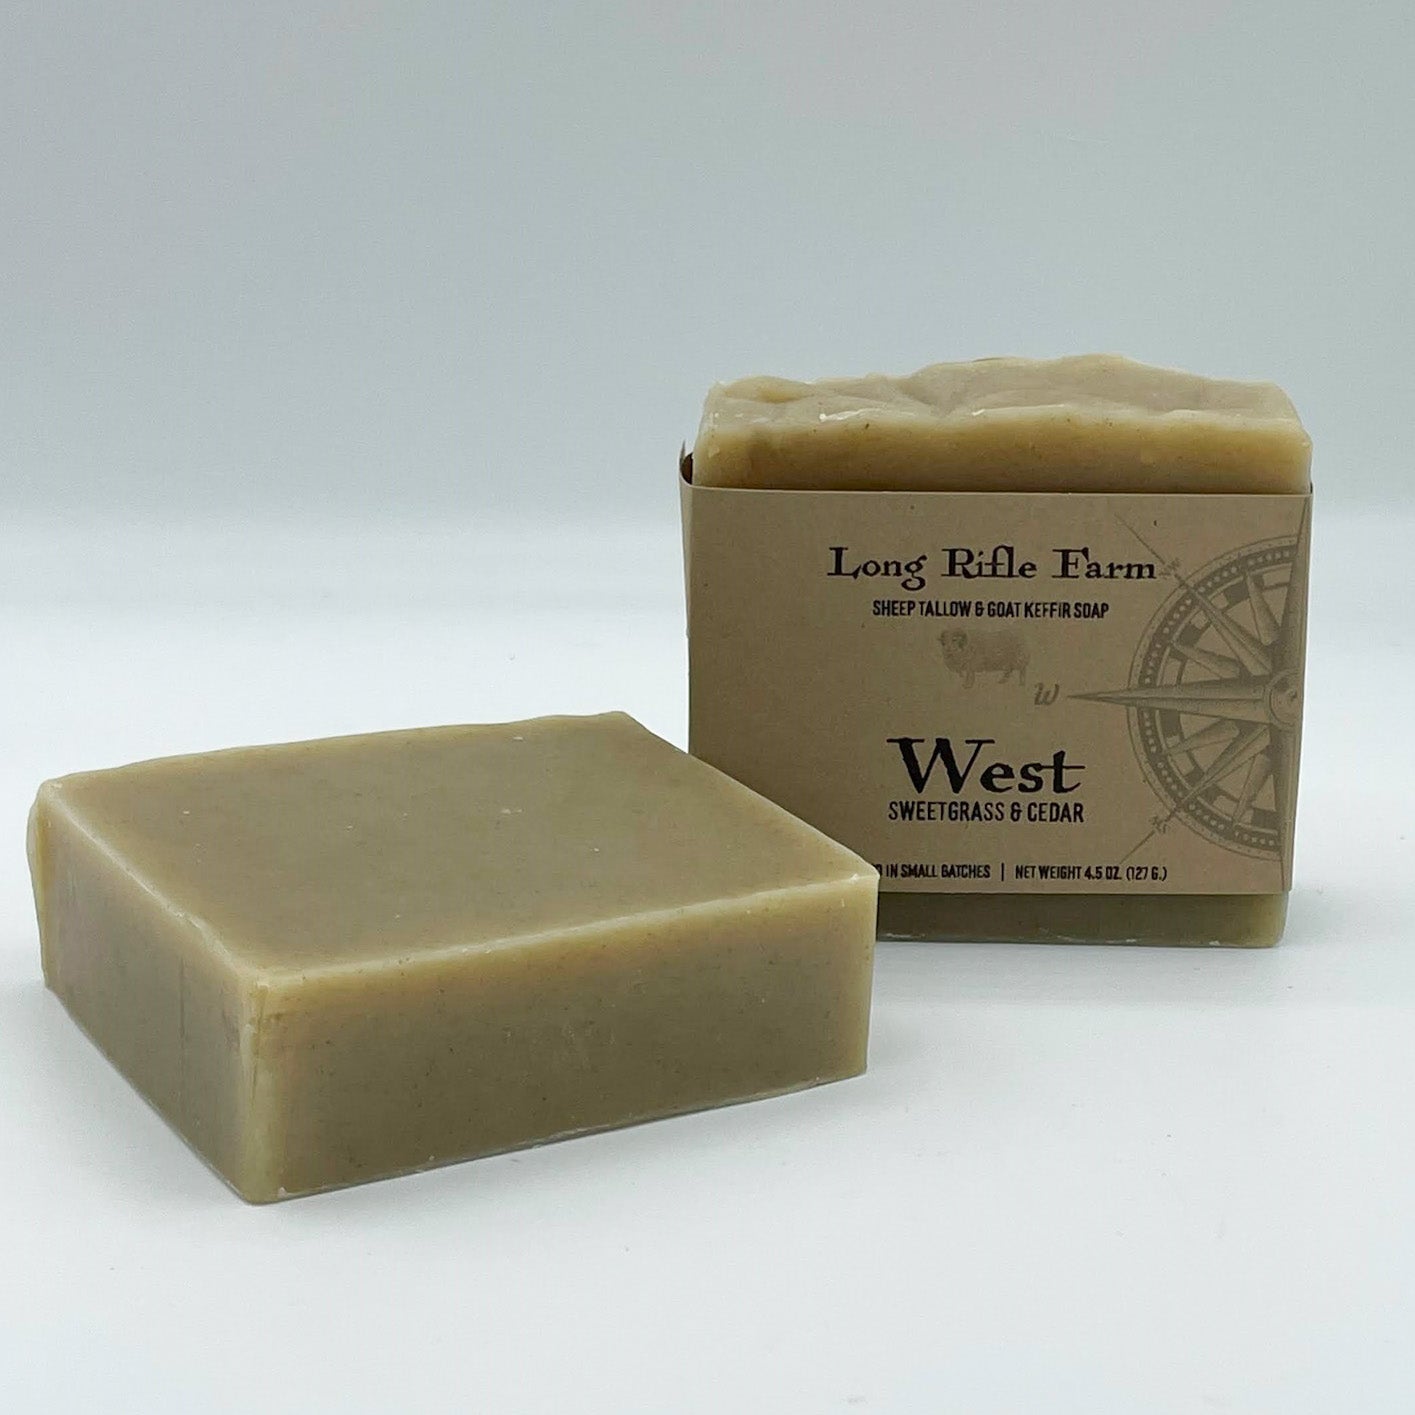 West Sweetgrass & Cedar Kefir Bar Soap